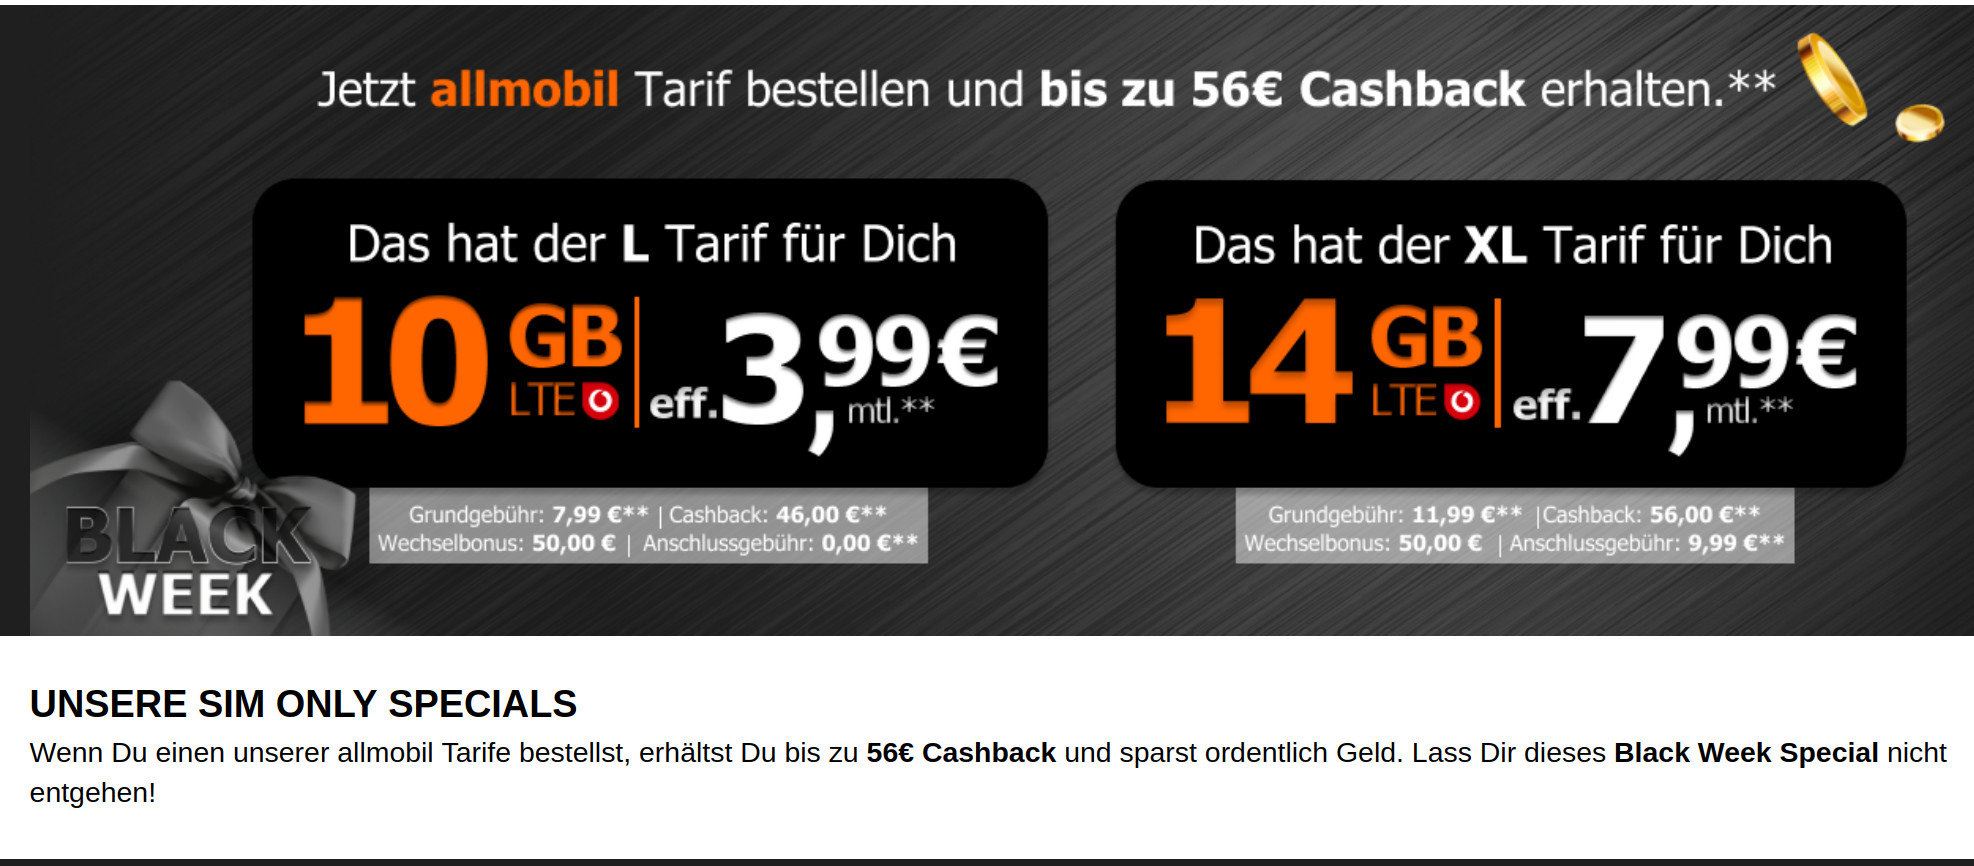 Black Week Tarife im Vodafone Netz: 10 GB All-In-Flat für mtl. 7,99 Euro, Eff. 3,99 Euro mit 50 Euro Wechselbonus und Cashback